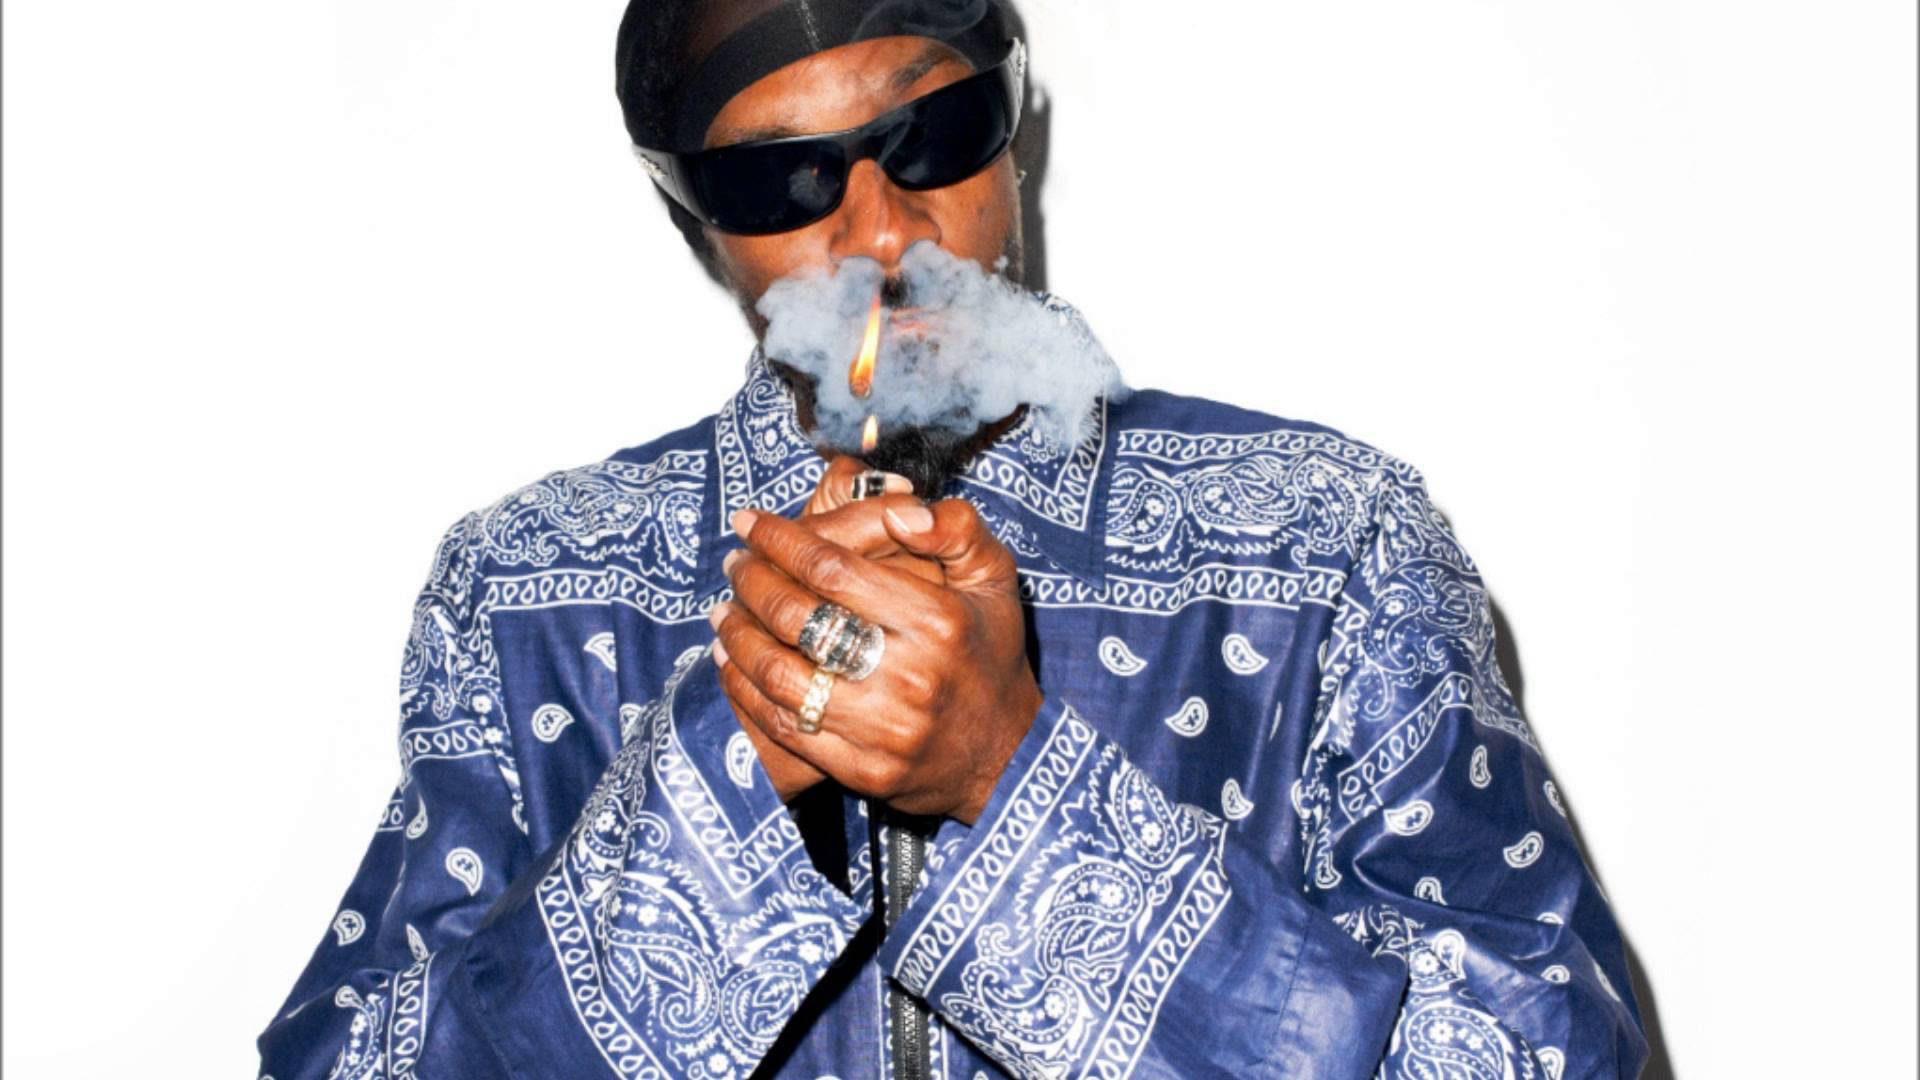 Snoop Dogg Crip Bandana Polo Wallpaper